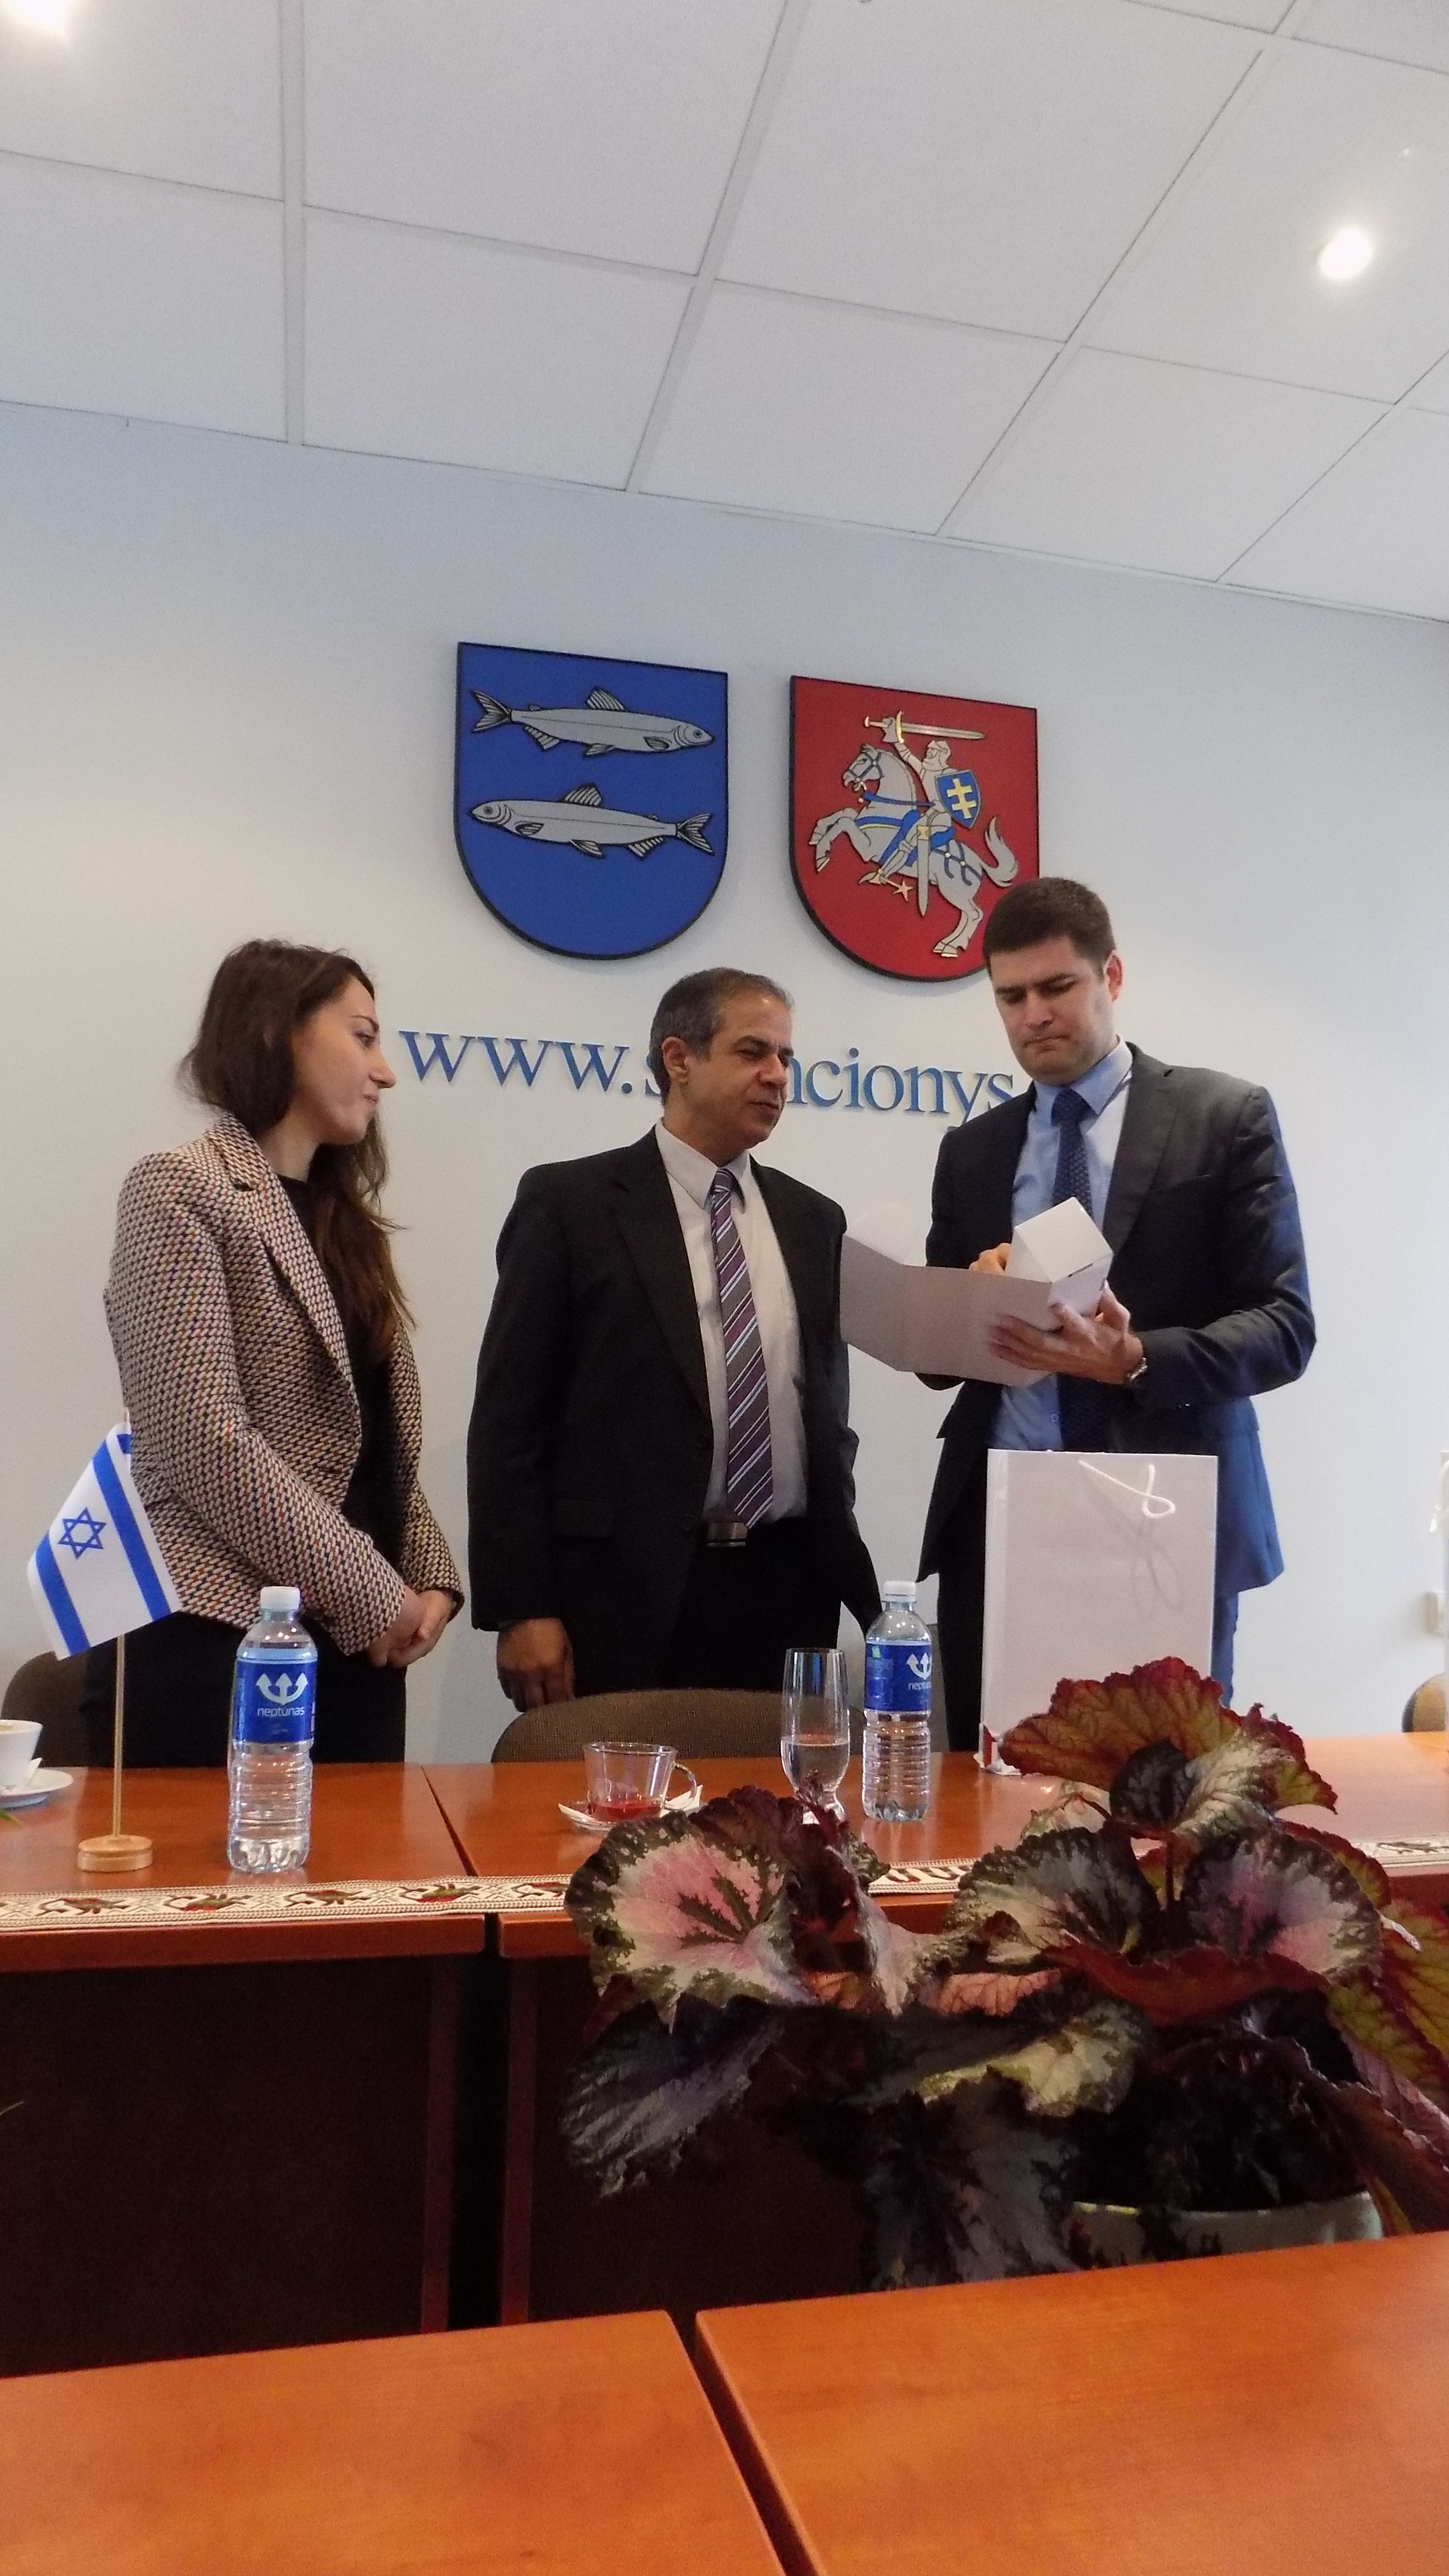 Izraelio ambasadorių į Švenčionis pritraukė rajono herbas su žuvelėmis